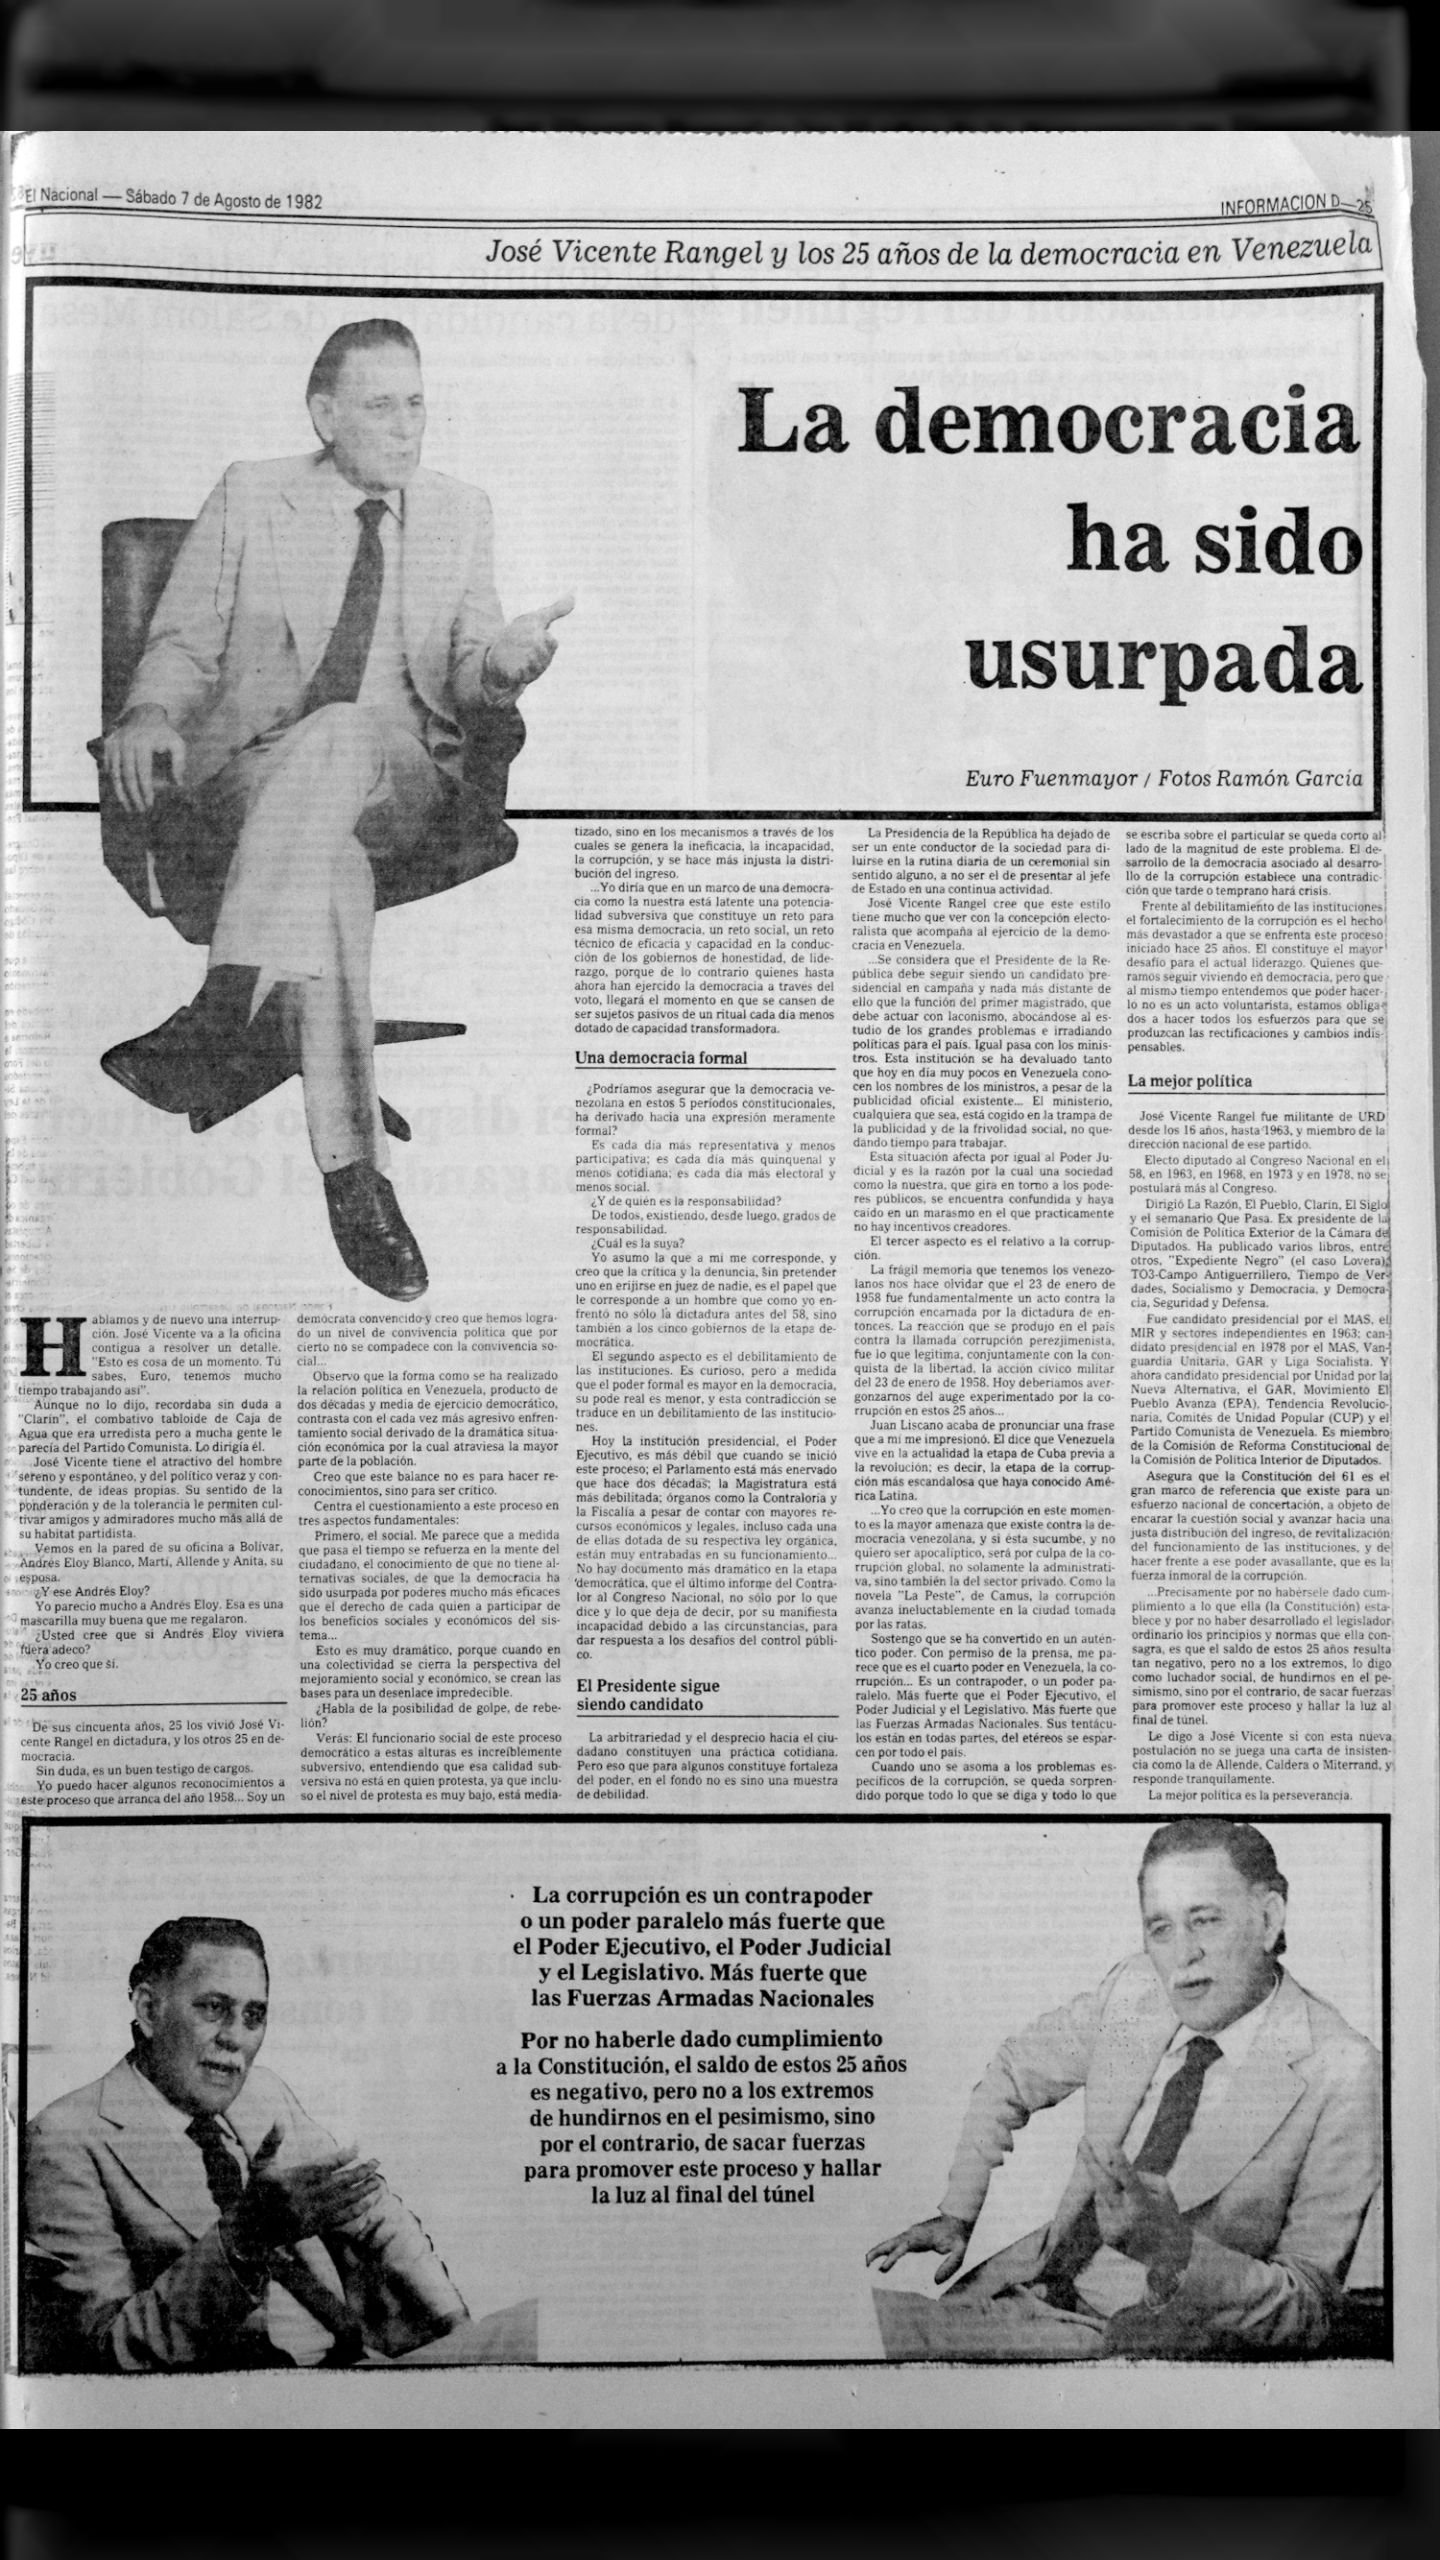 La democracia ha sido usurpada (El Nacional, 7 de agosto 1982)